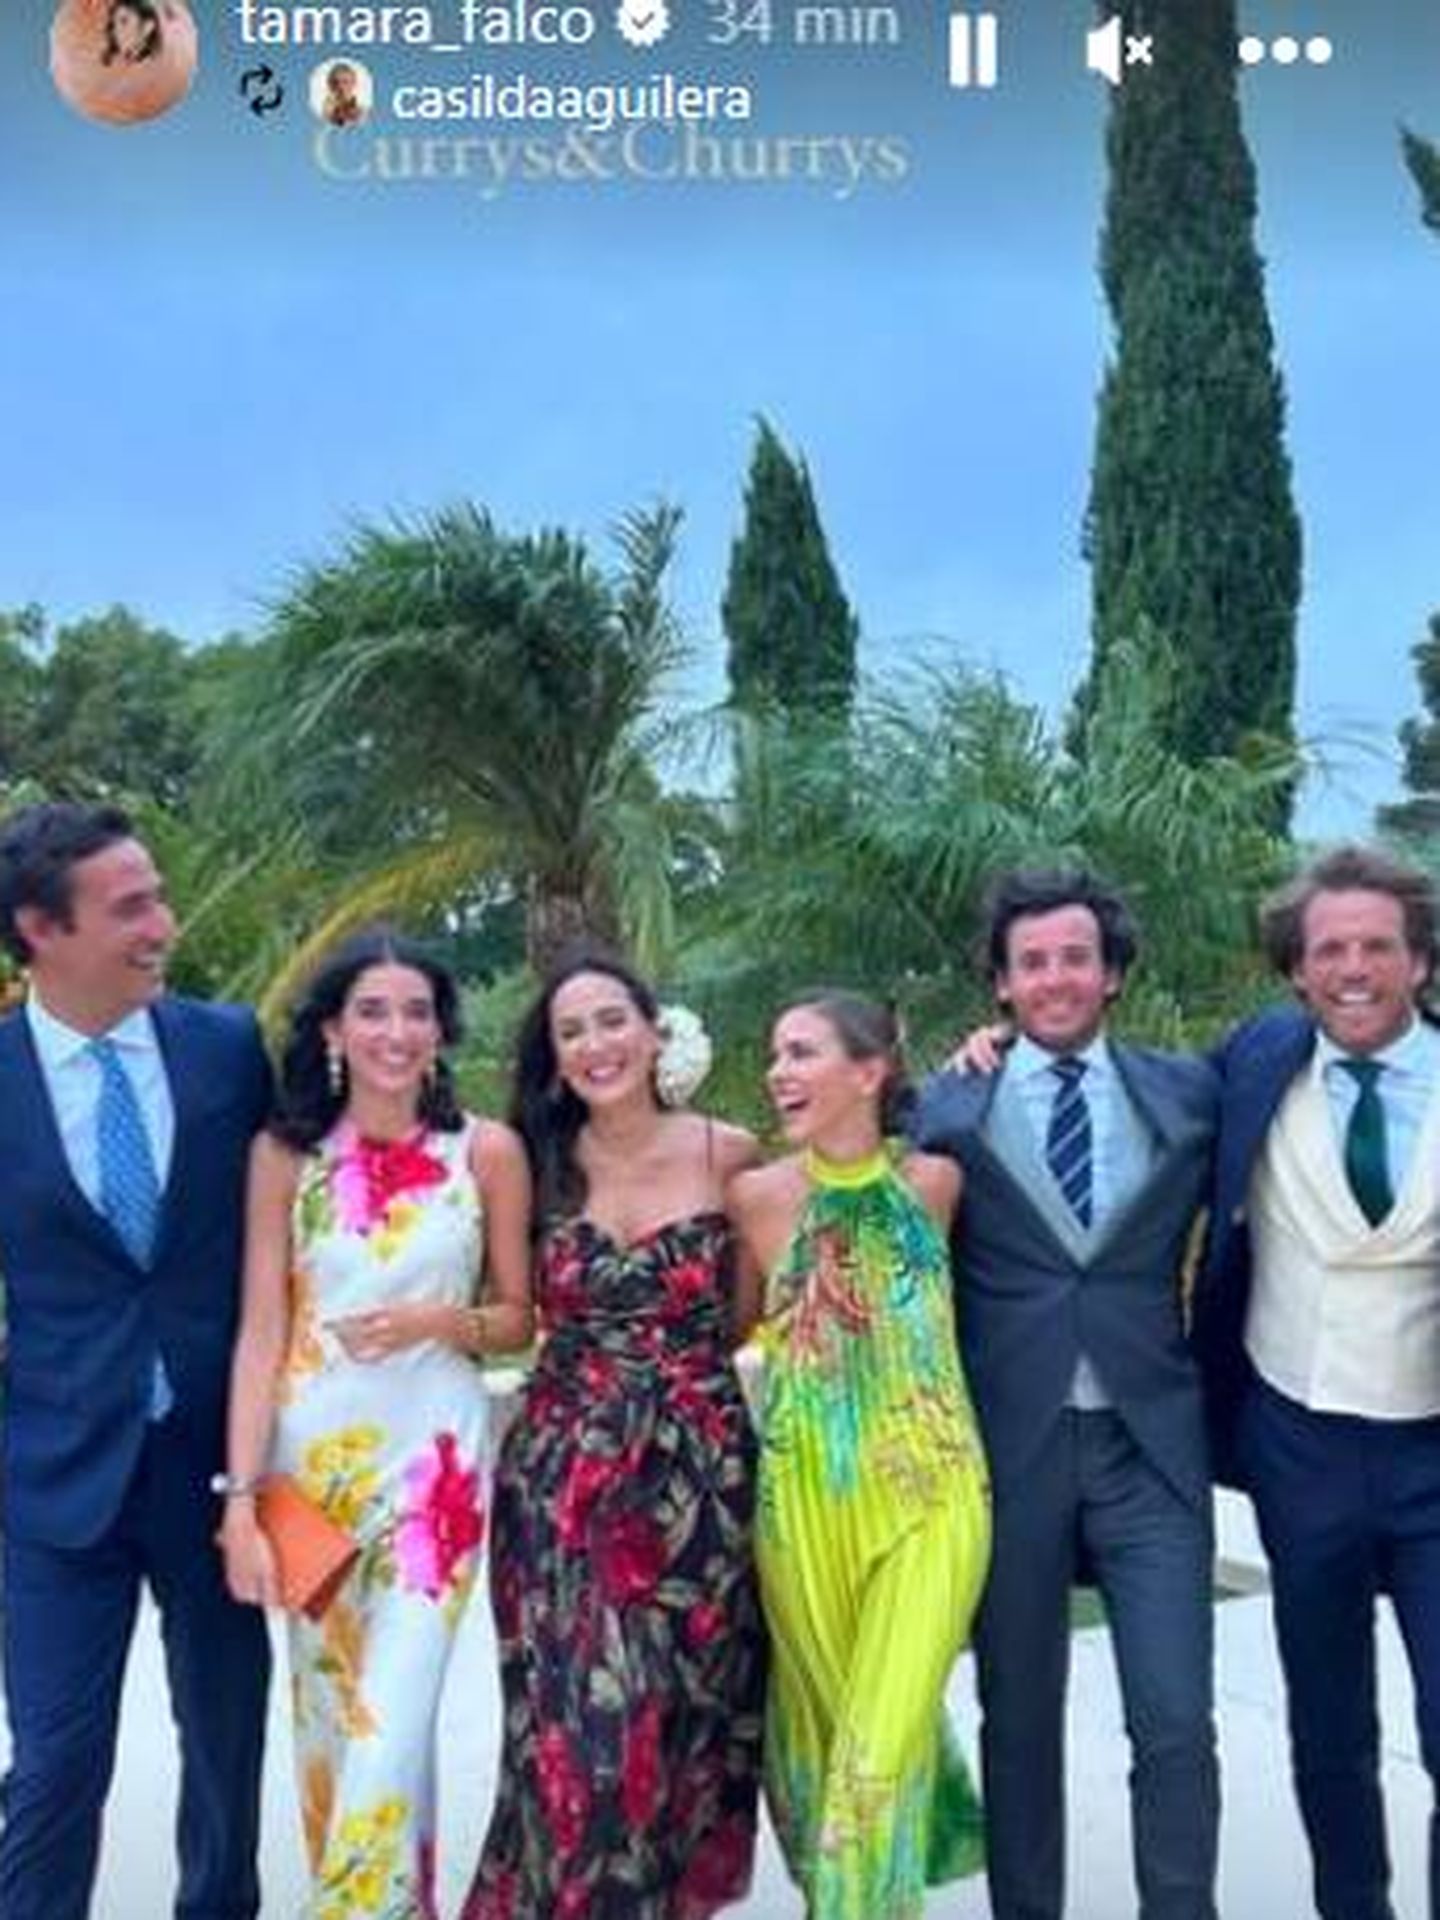 Tamara Falcó con Iñigo Onieva y otros invitados, en la boda de Bergel. (IG)